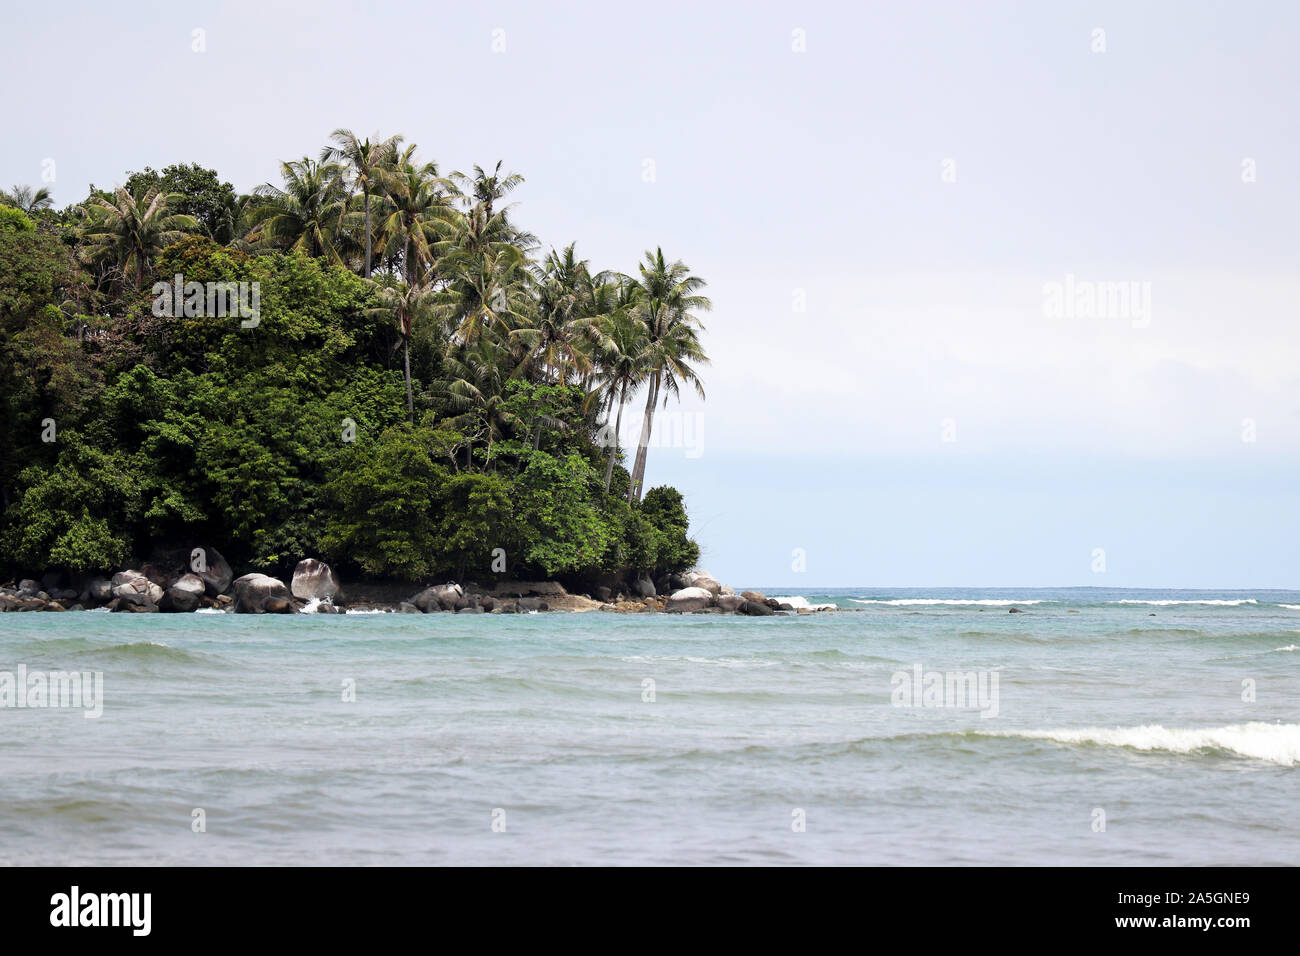 Île tropicale, vue sur la mer et le vert forêt avec des cocotiers. Paysage paradisiaque avec de l'eau bleu azur et de la côte rocheuse Banque D'Images